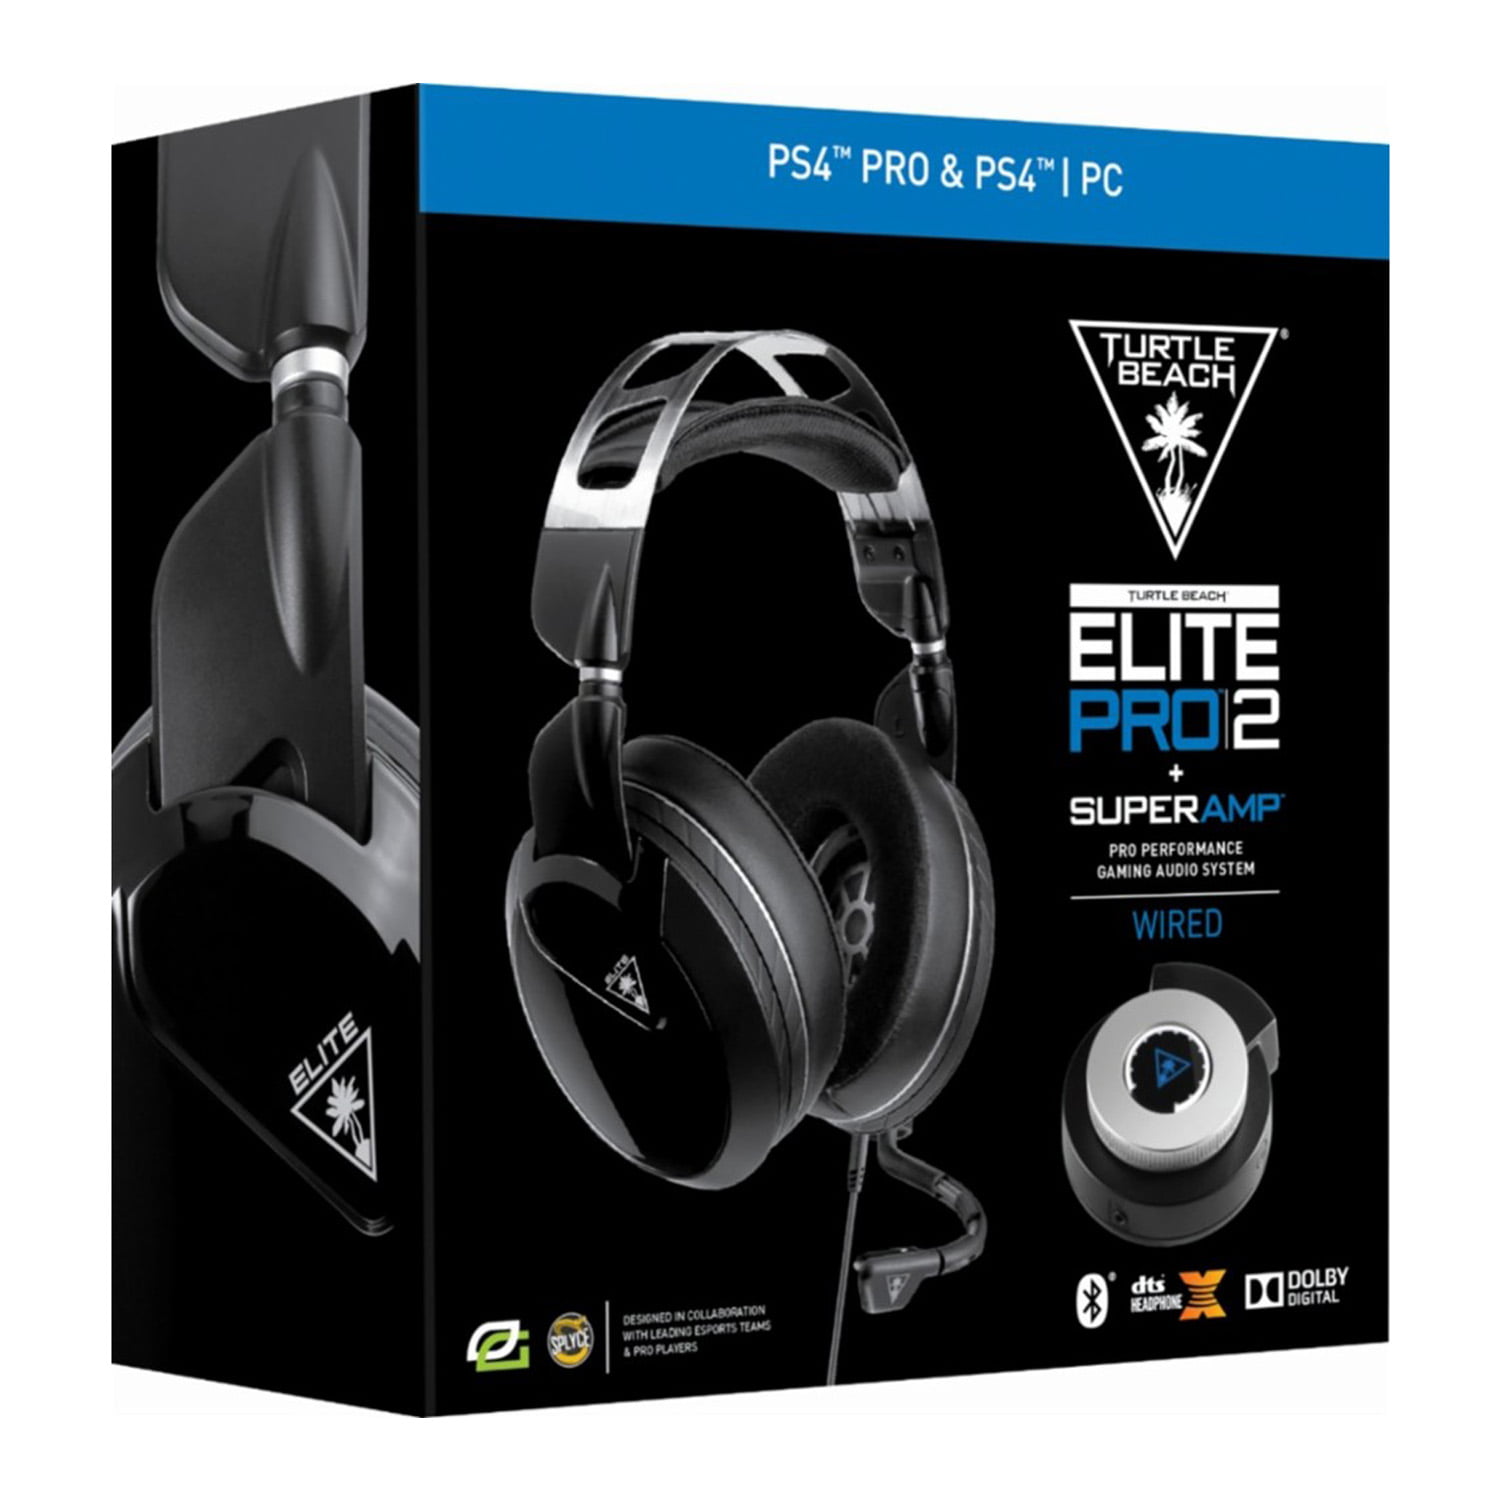 Elite Pro 2 + SuperAmp Pro Performance Gaming Audio System, Black 